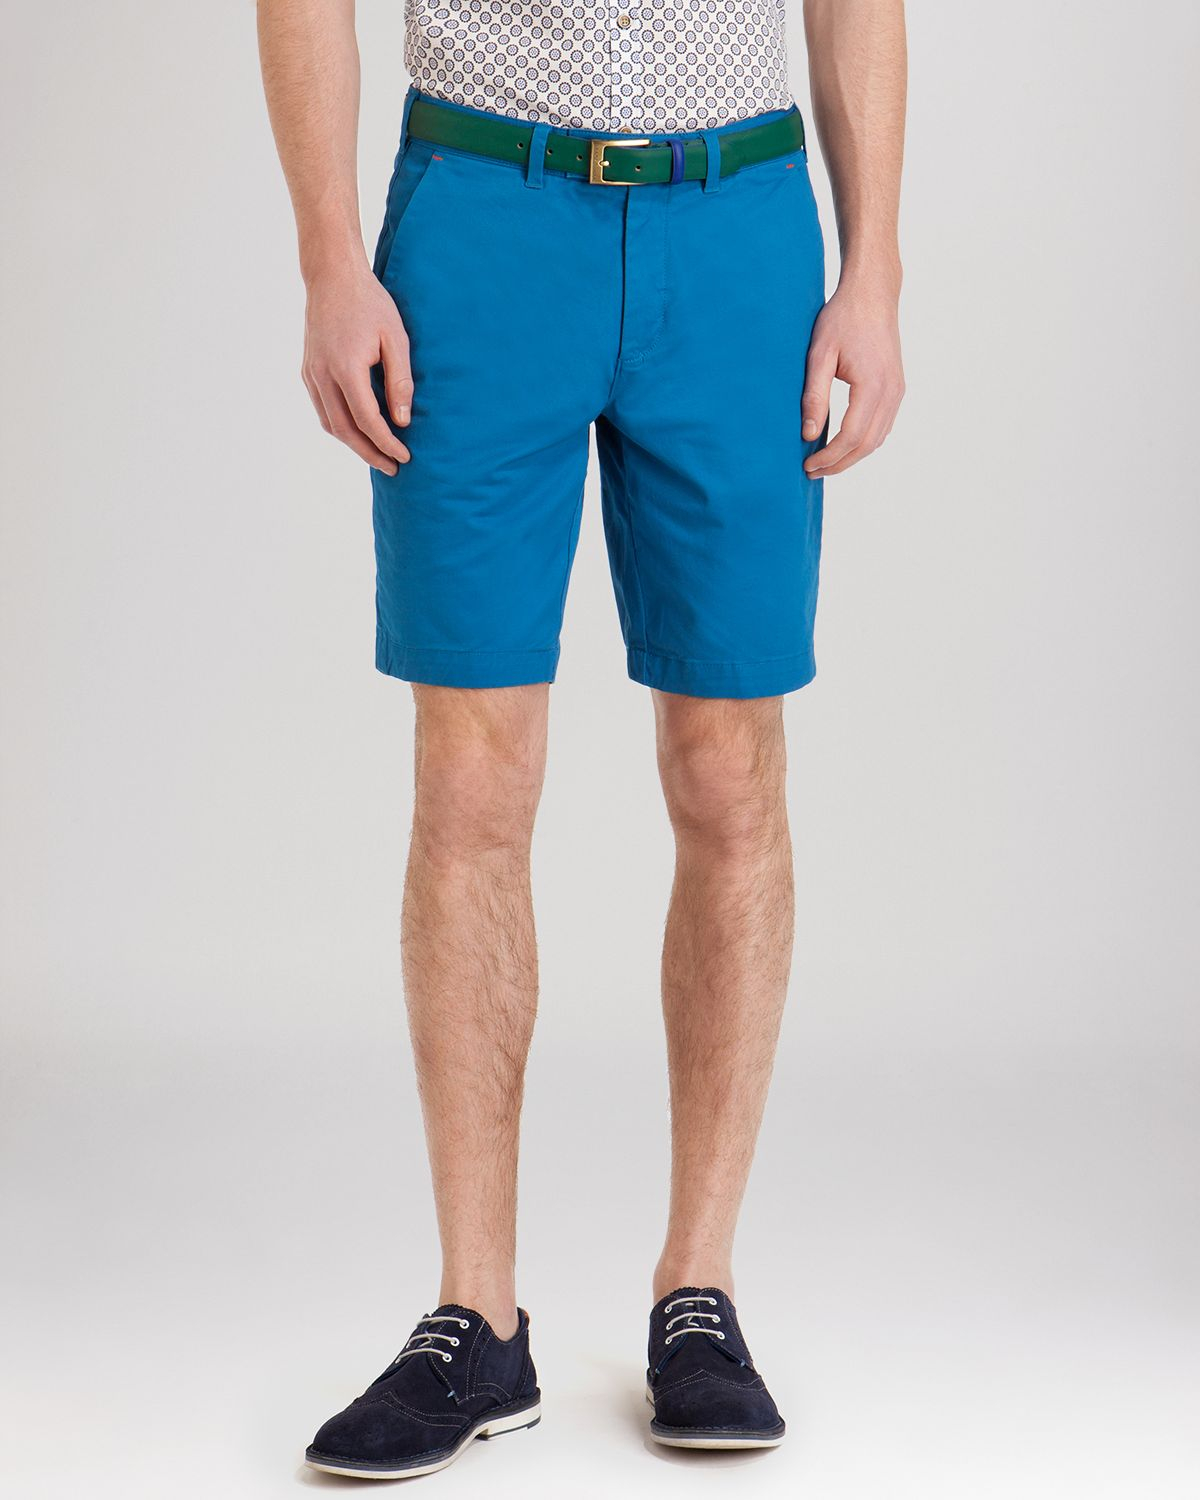 Lyst - Ted Baker Shoaks Chino Shorts in Blue for Men